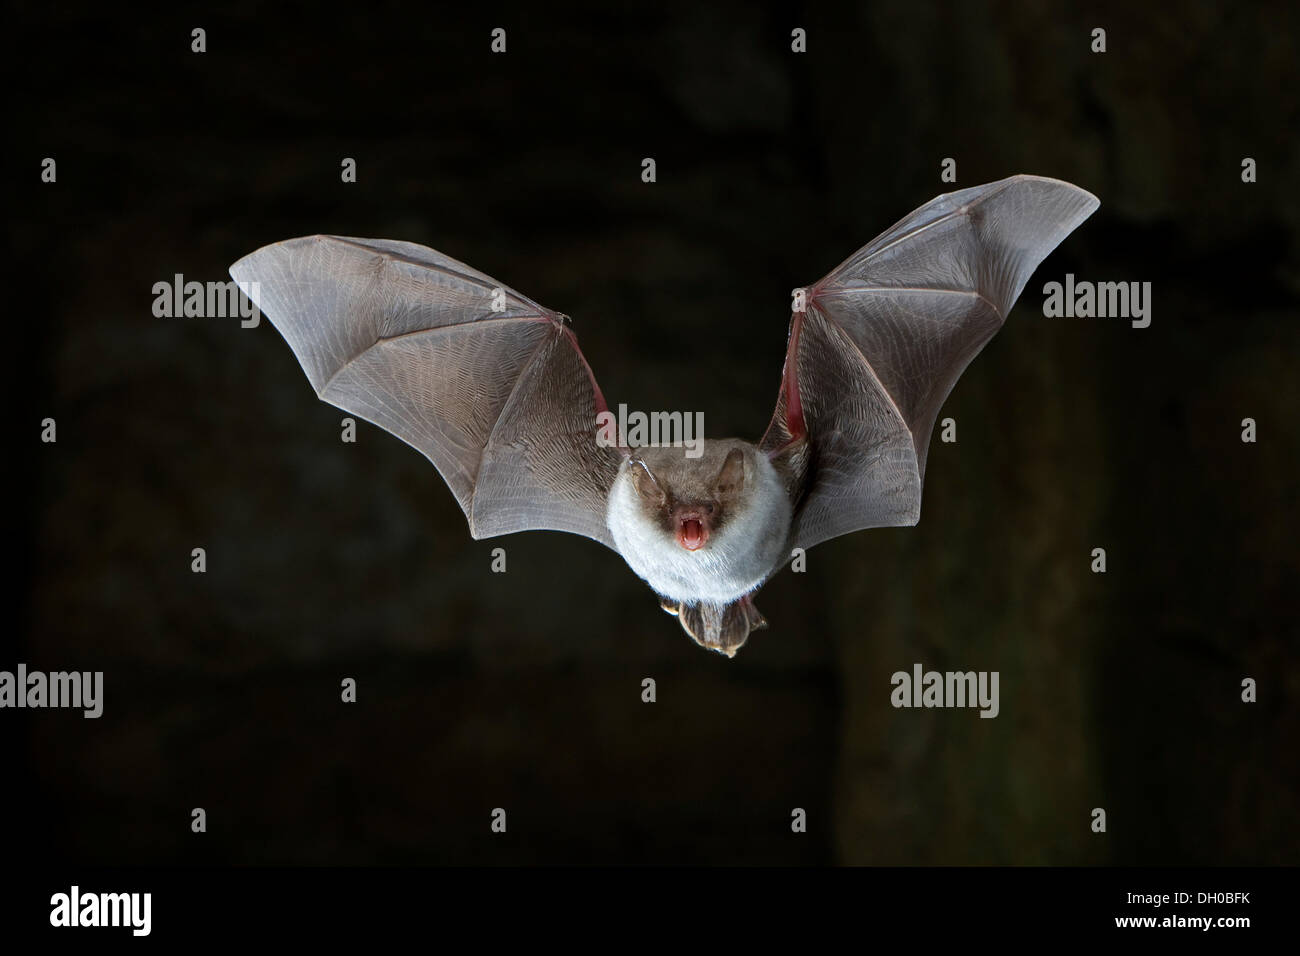 Natterer's bat (Myotis nattereri) flying in cave, Thuringia Stock Photo